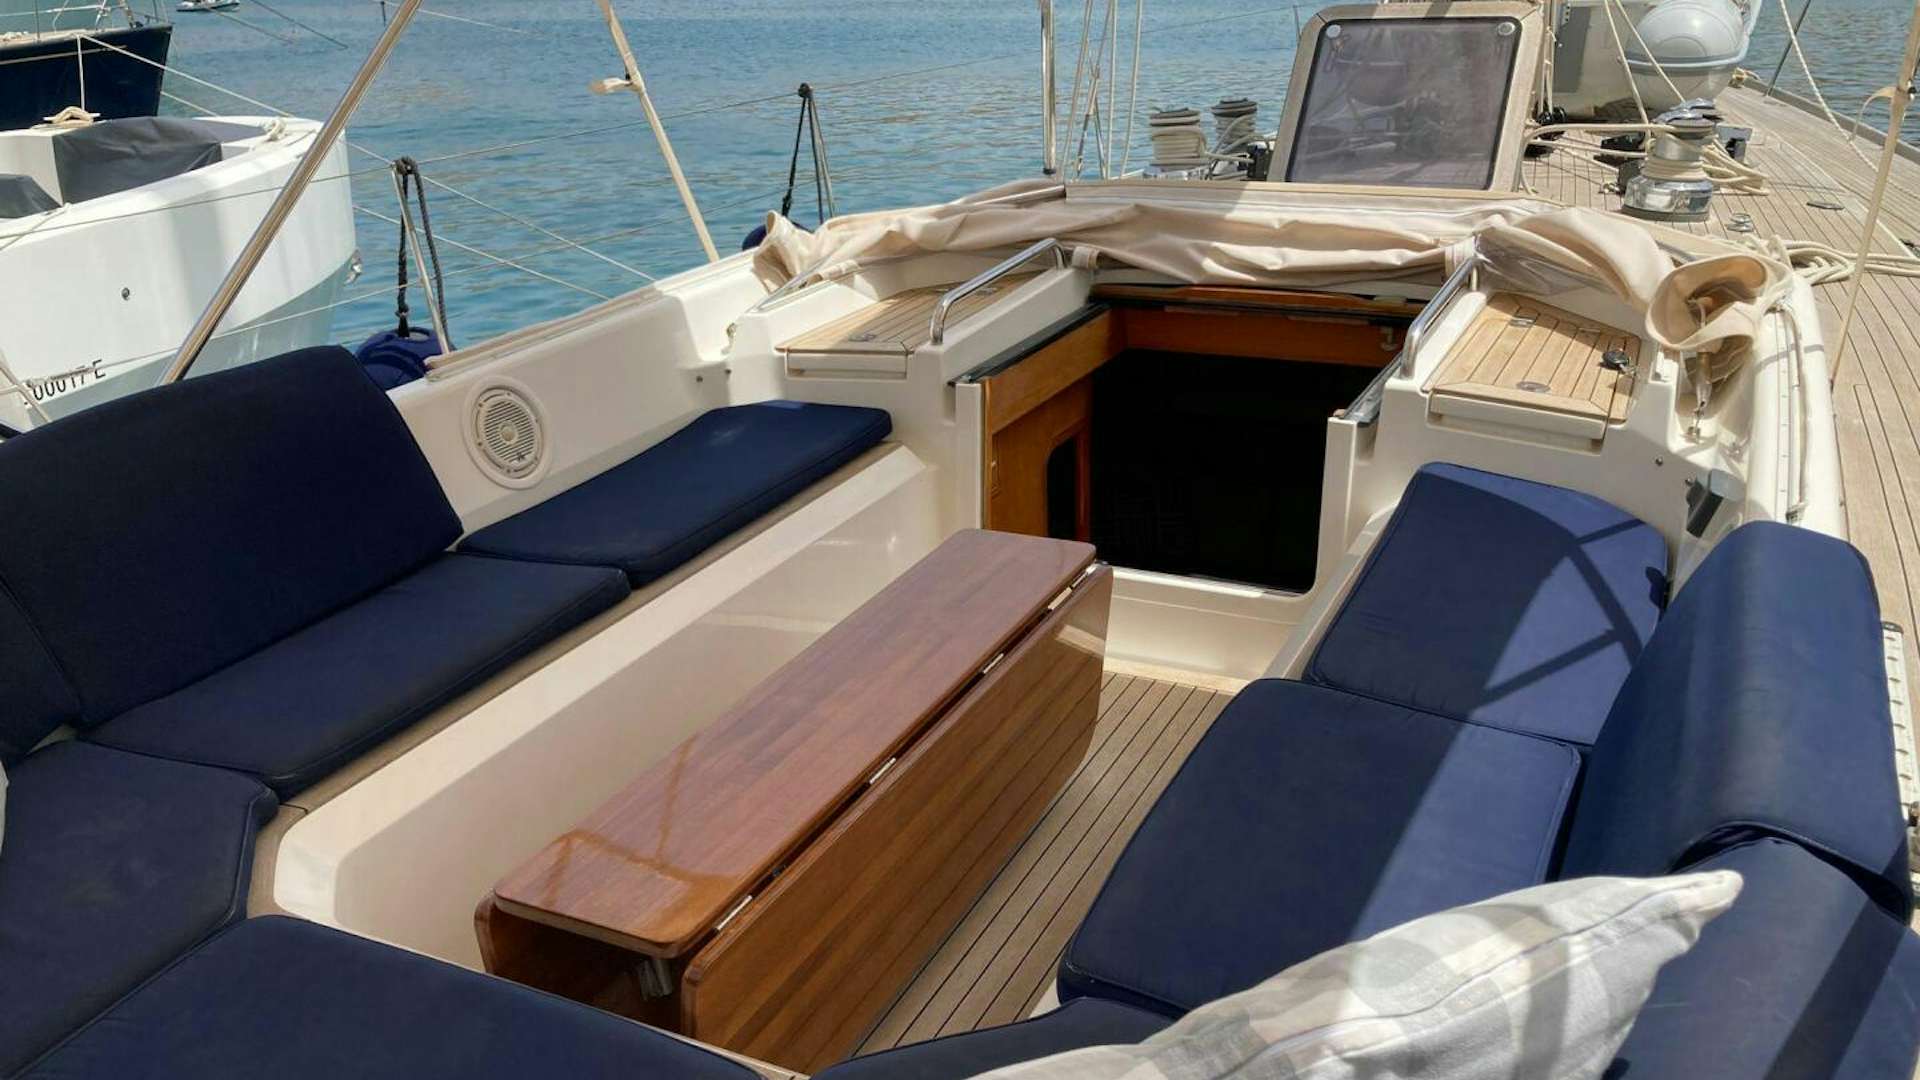 Indigo vii
Yacht for Sale